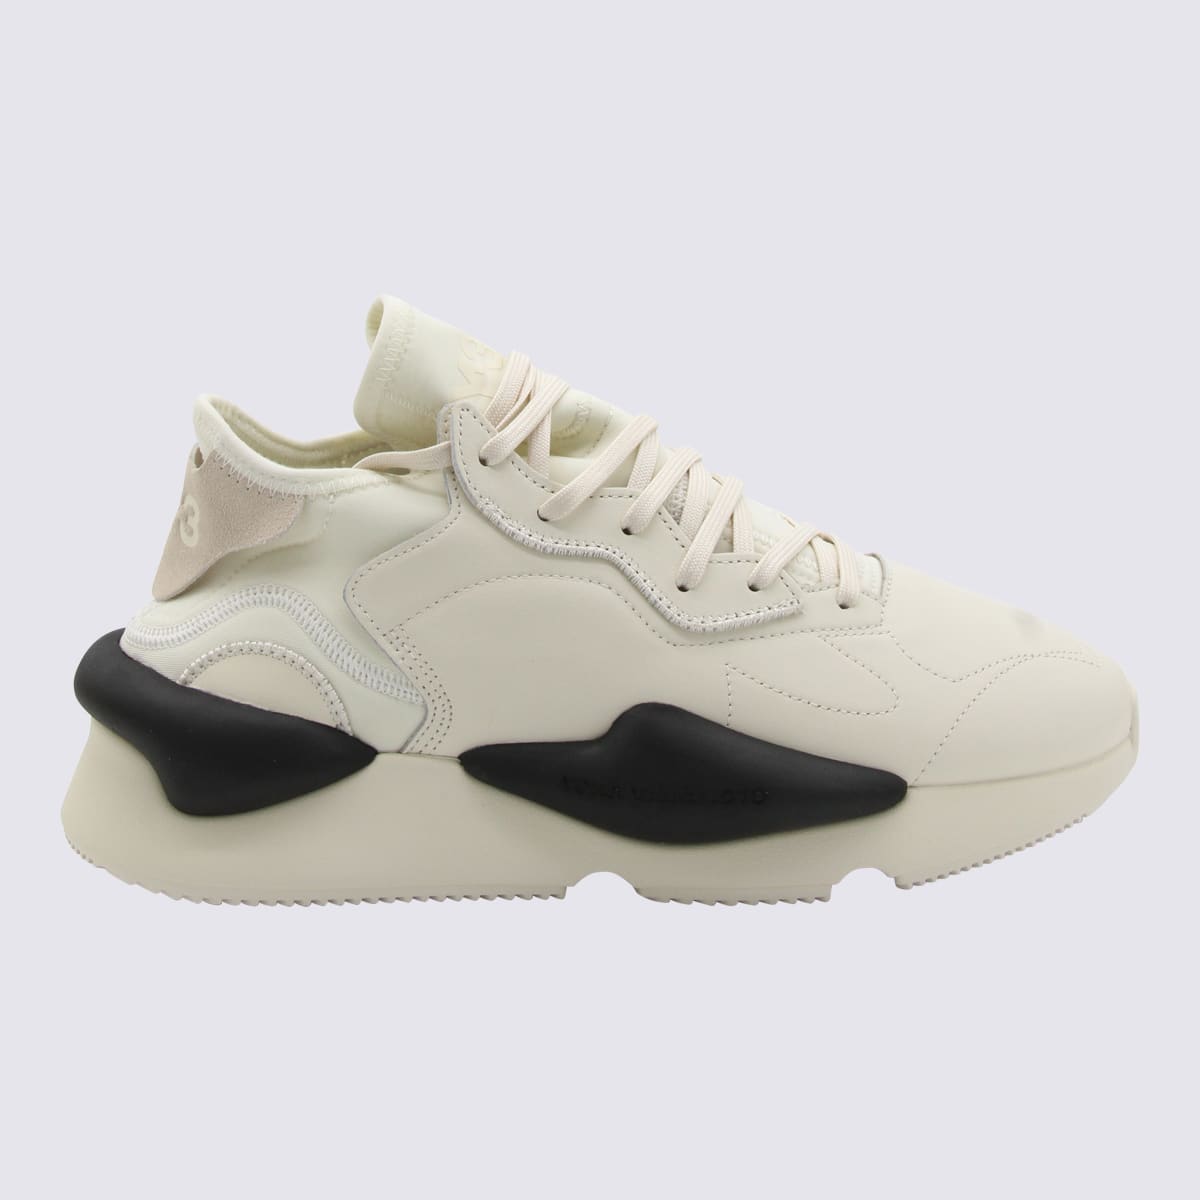 Y-3 White Leather Kaiwa Sneakers In Cream White/off White/black